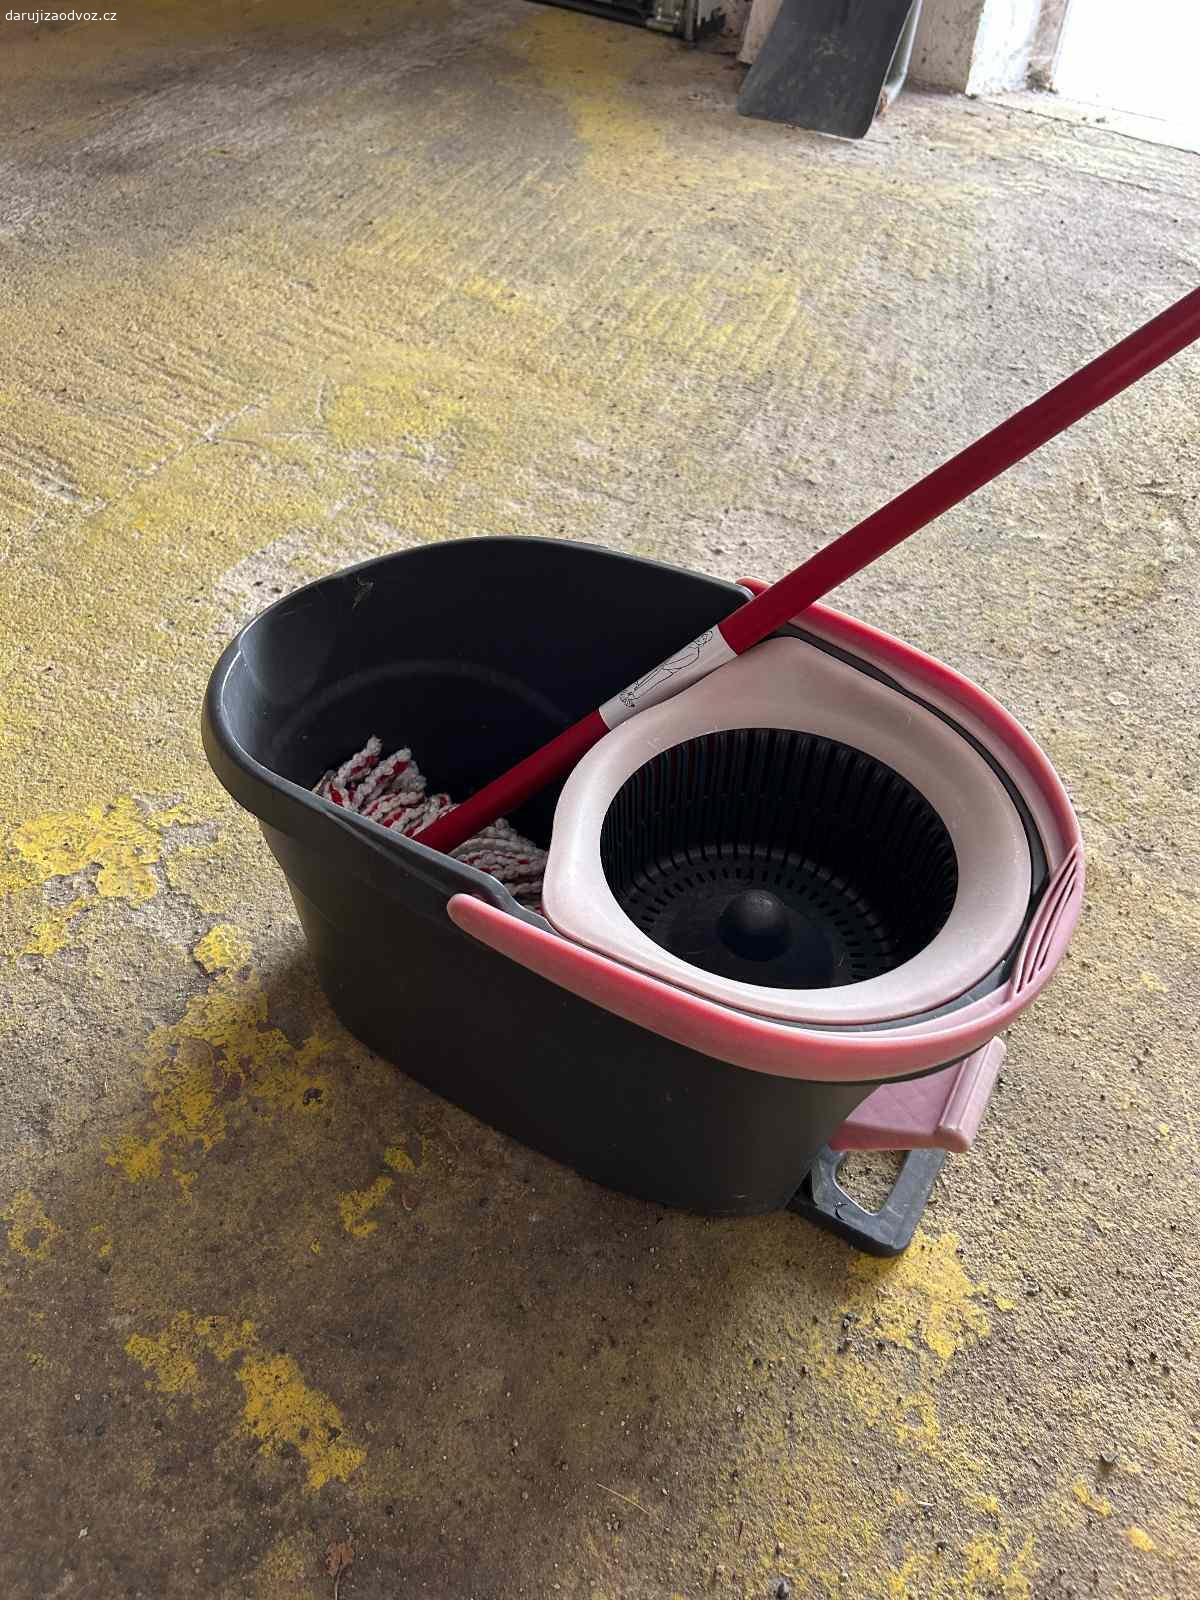 Mop a kbelík. Daruji starší mop a kbelík. Mechanismus pro rotační ždímání funguje, ale mop již není původní.